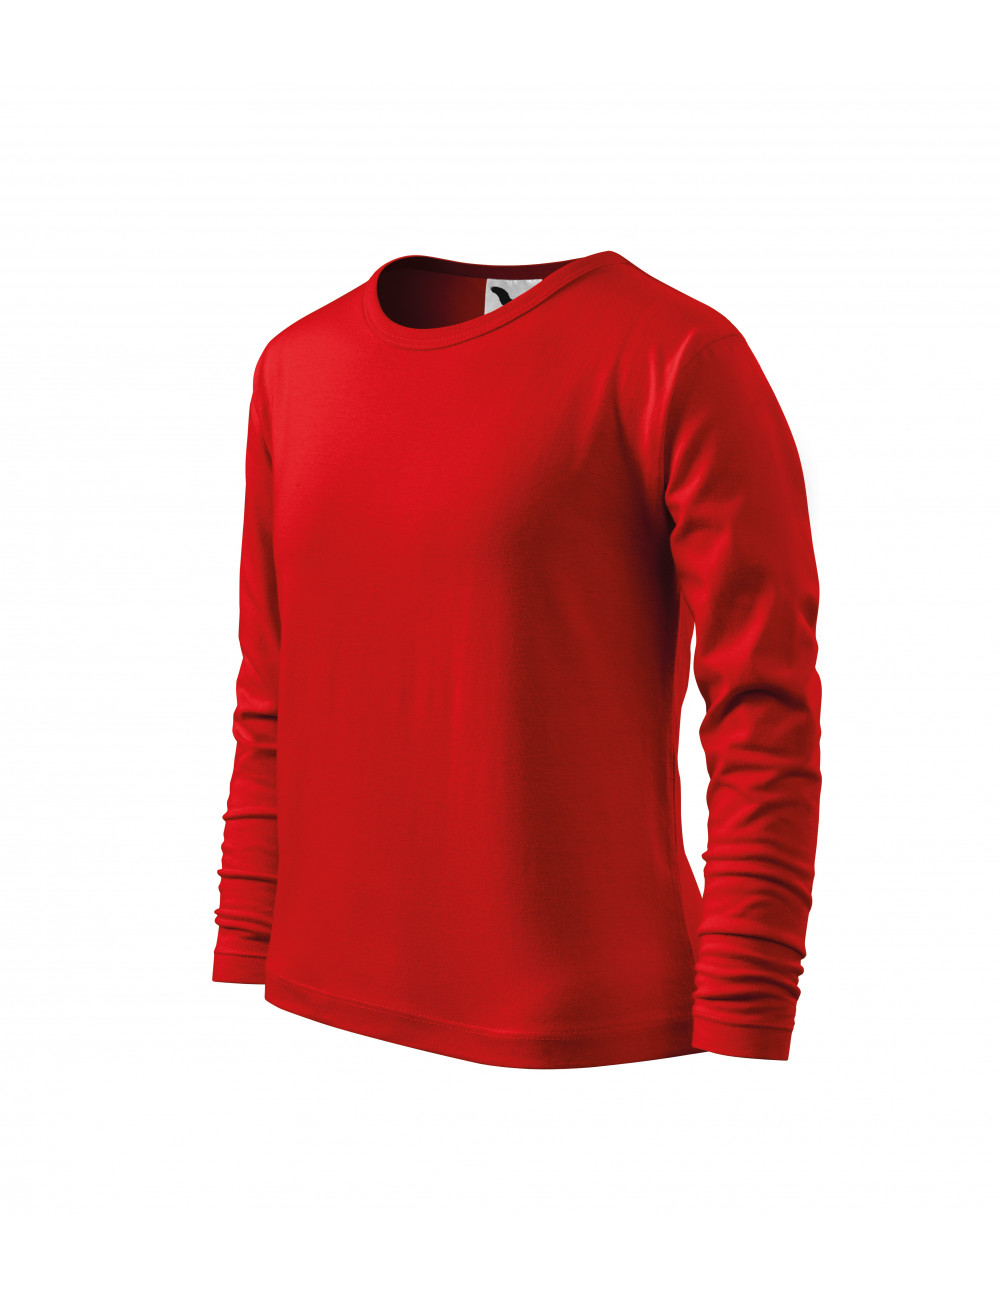 Children`s t-shirt long sleeve 121 red Adler Malfini